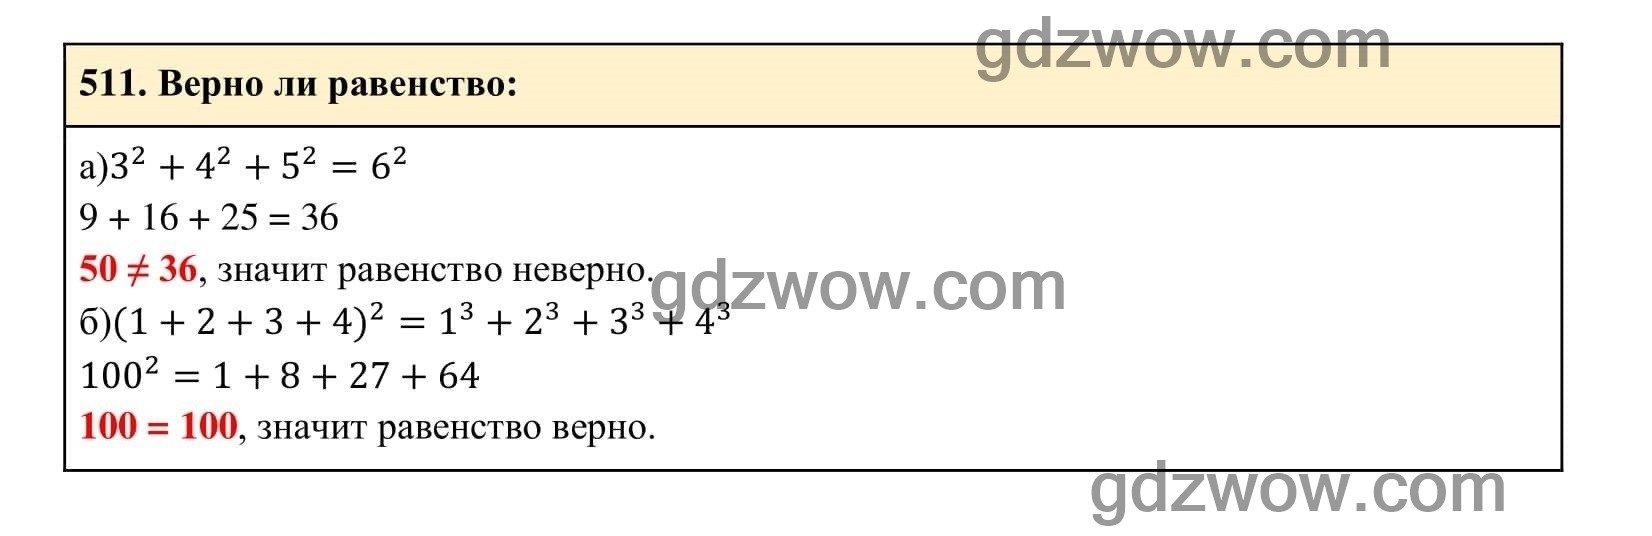 Упражнение 511 - ГДЗ по Алгебре 7 класс Учебник Макарычев (решебник) - GDZwow